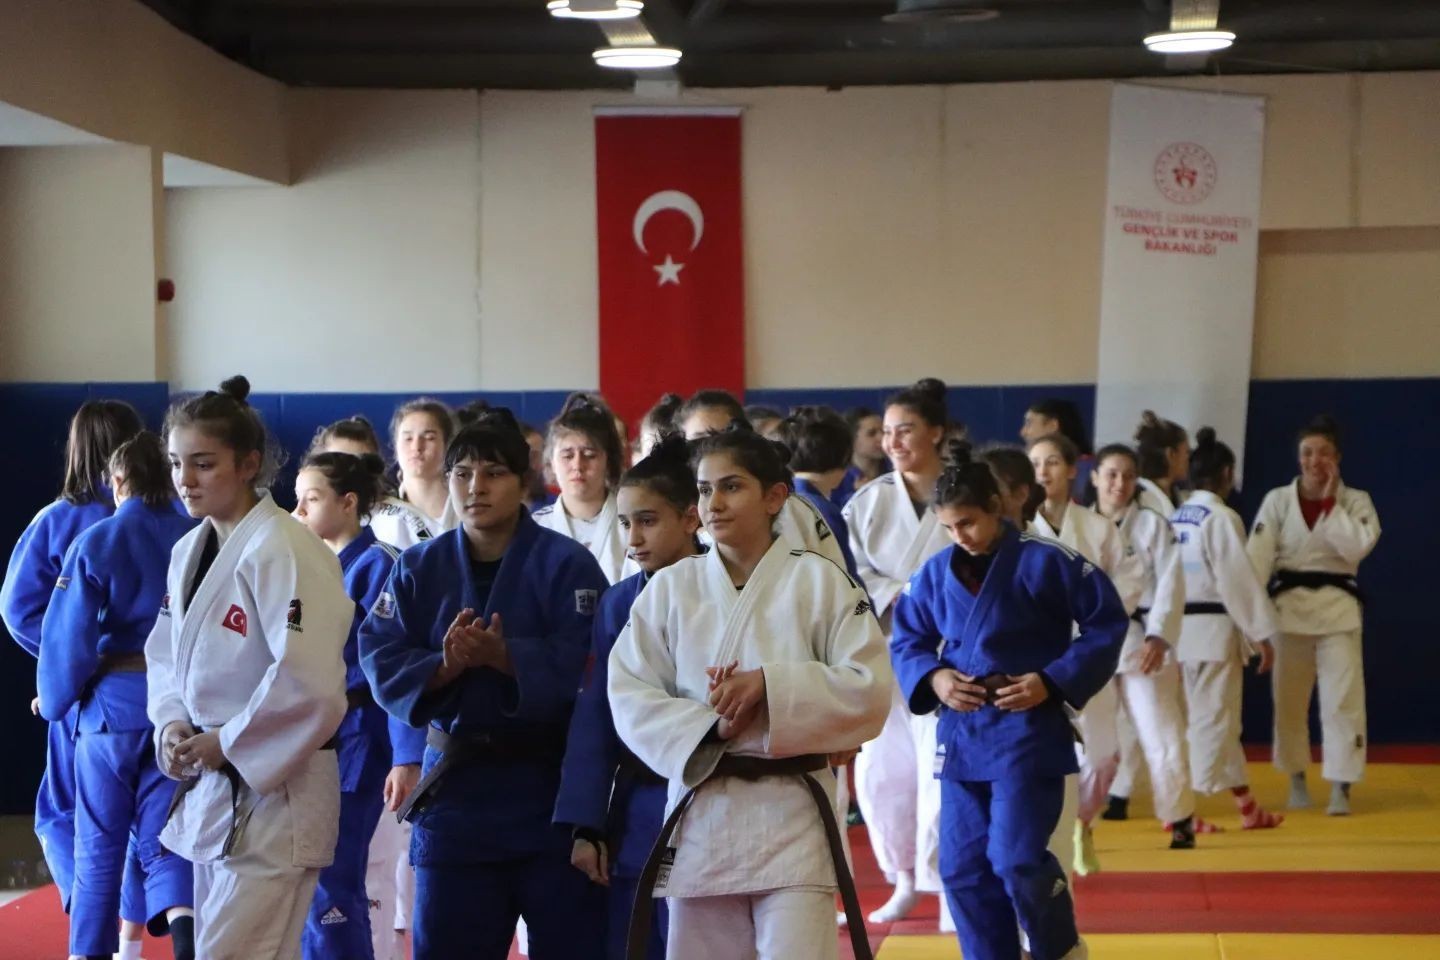 Ümit Milli Kadın Judo Takımı, Burdur’da kampa girdi #burdur